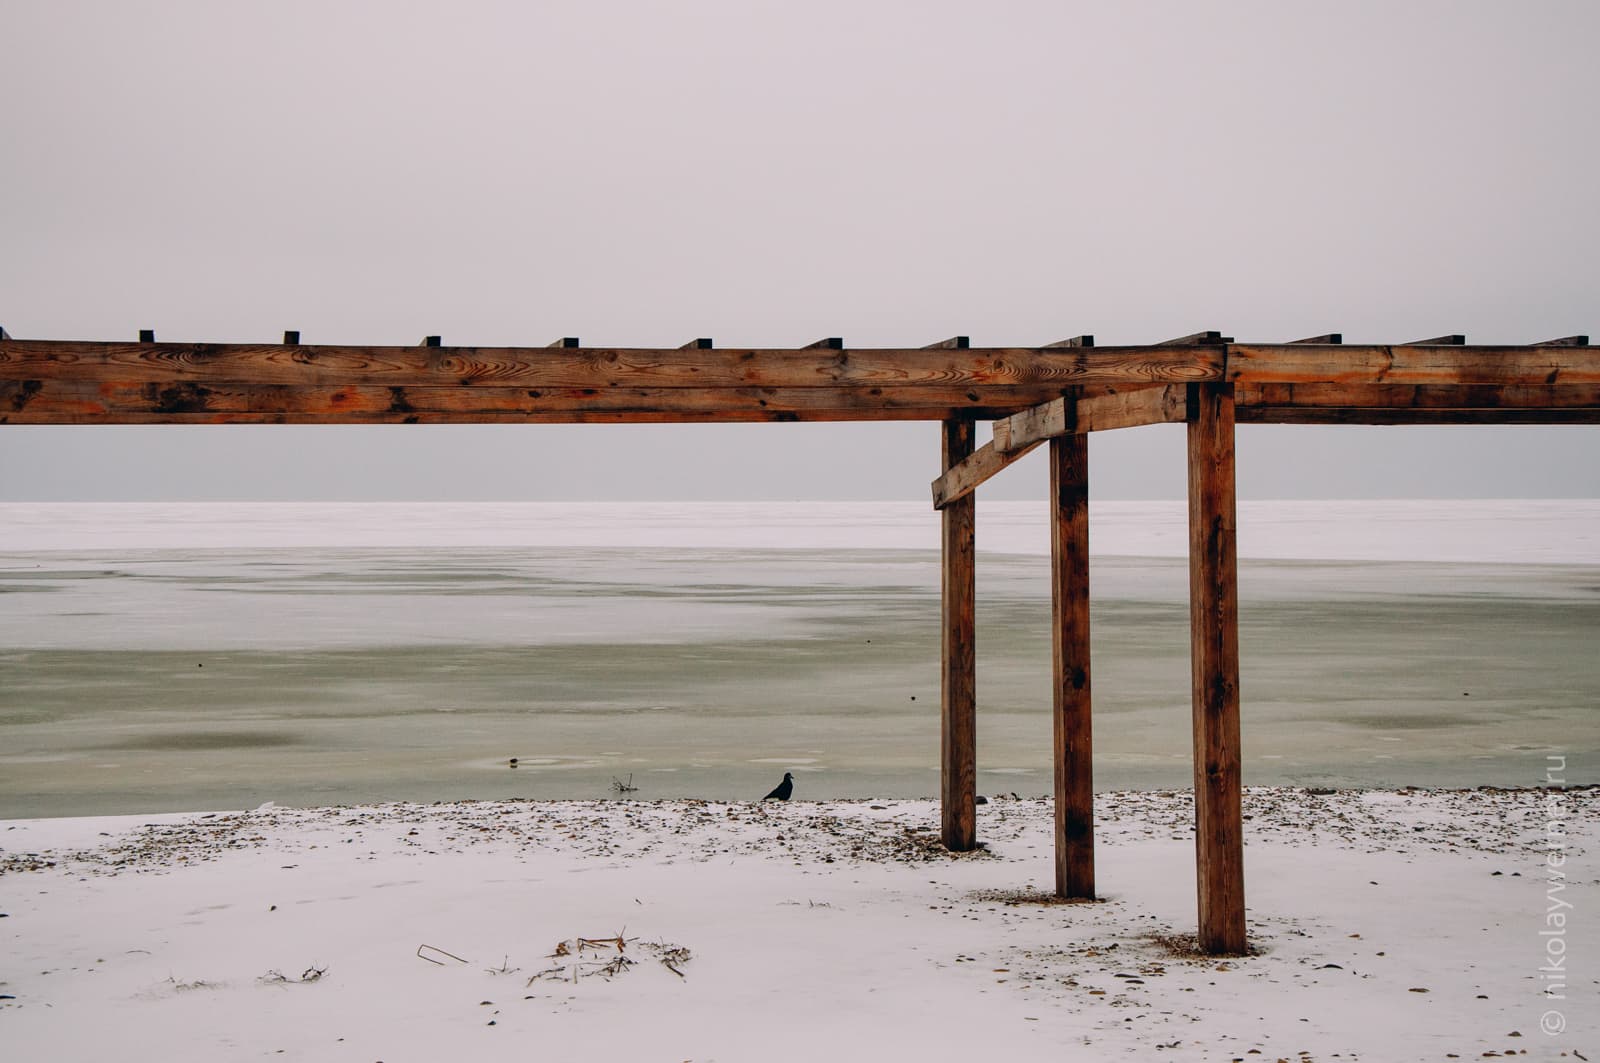 Берег моря. Каменистый пляж, укрытый тонким слоем снега. Стоит деревянный навес.